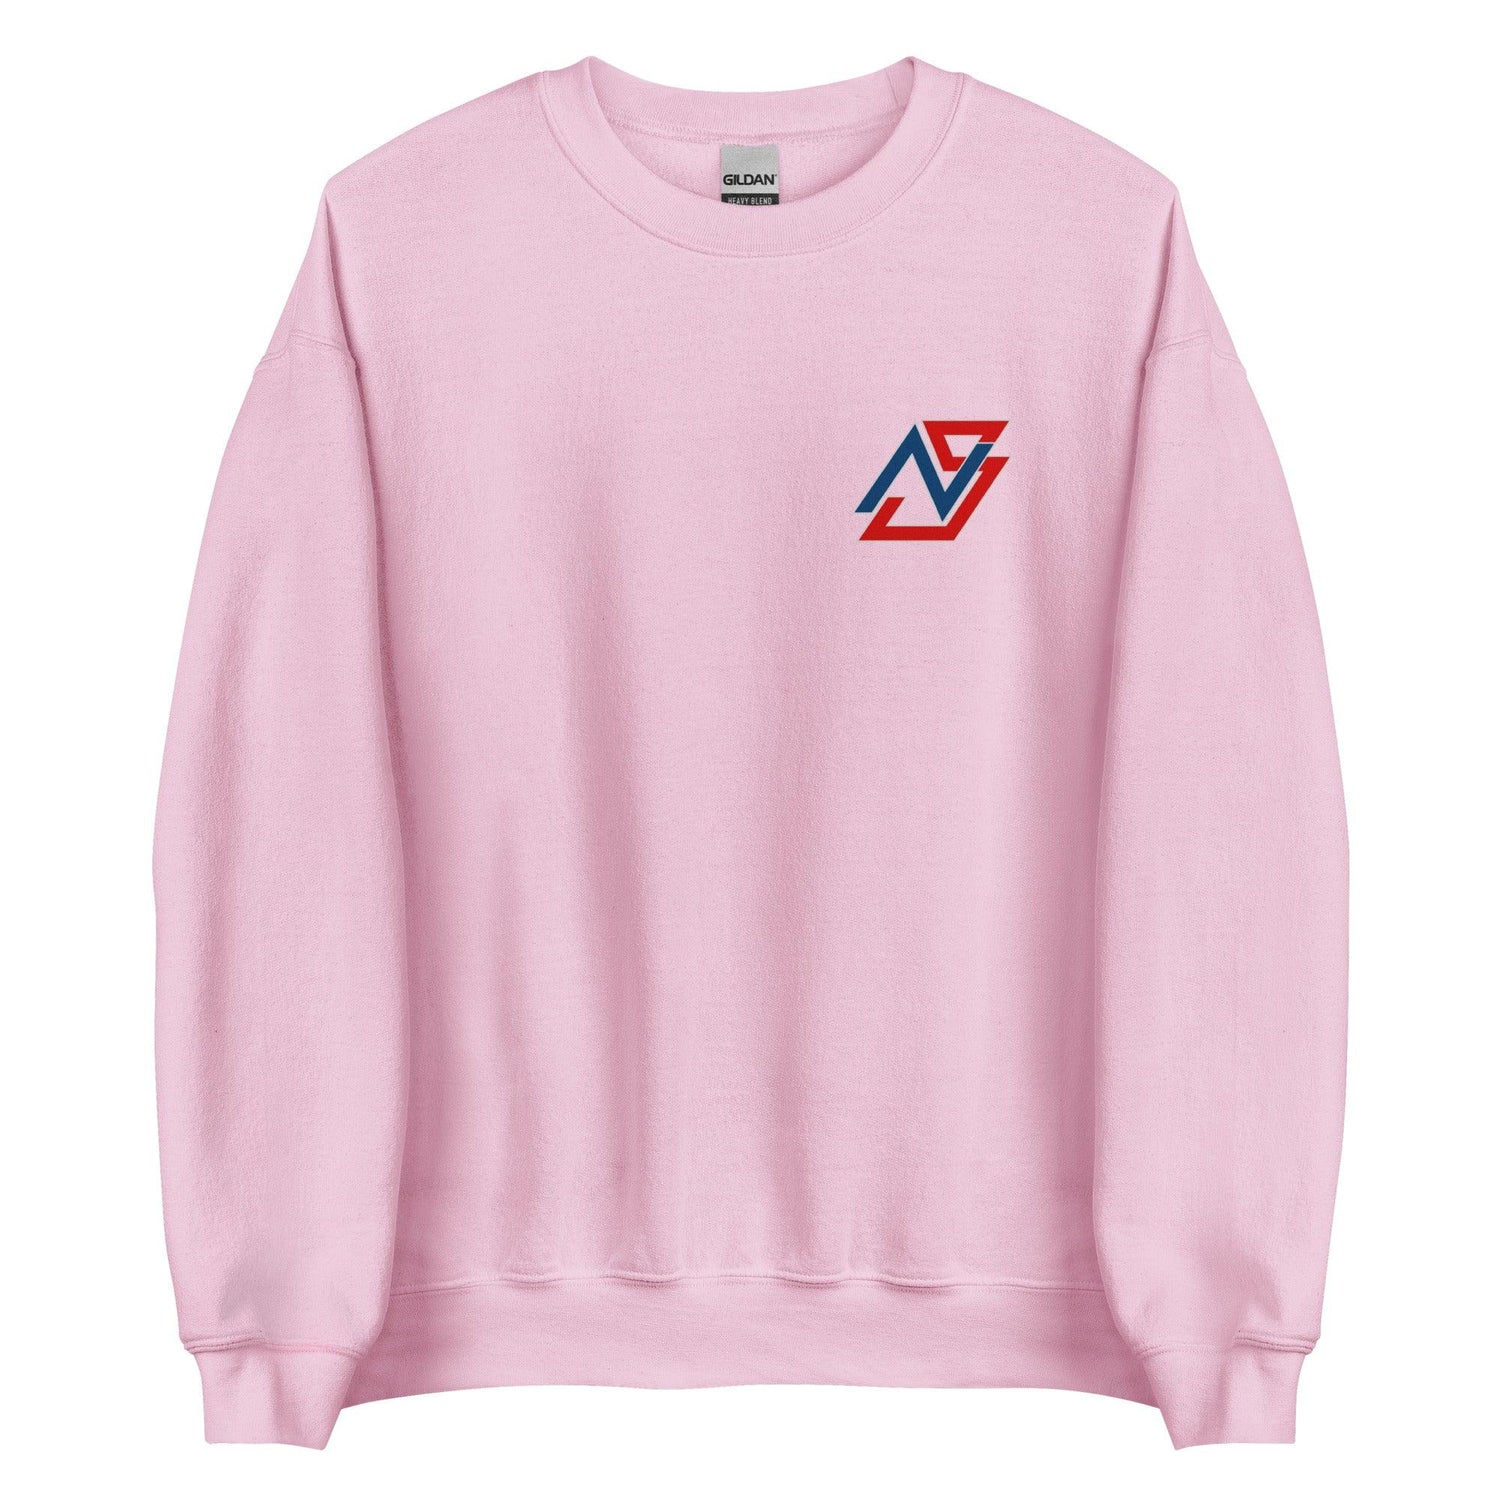 Nolan Schanuel “NS” Sweatshirt - Fan Arch